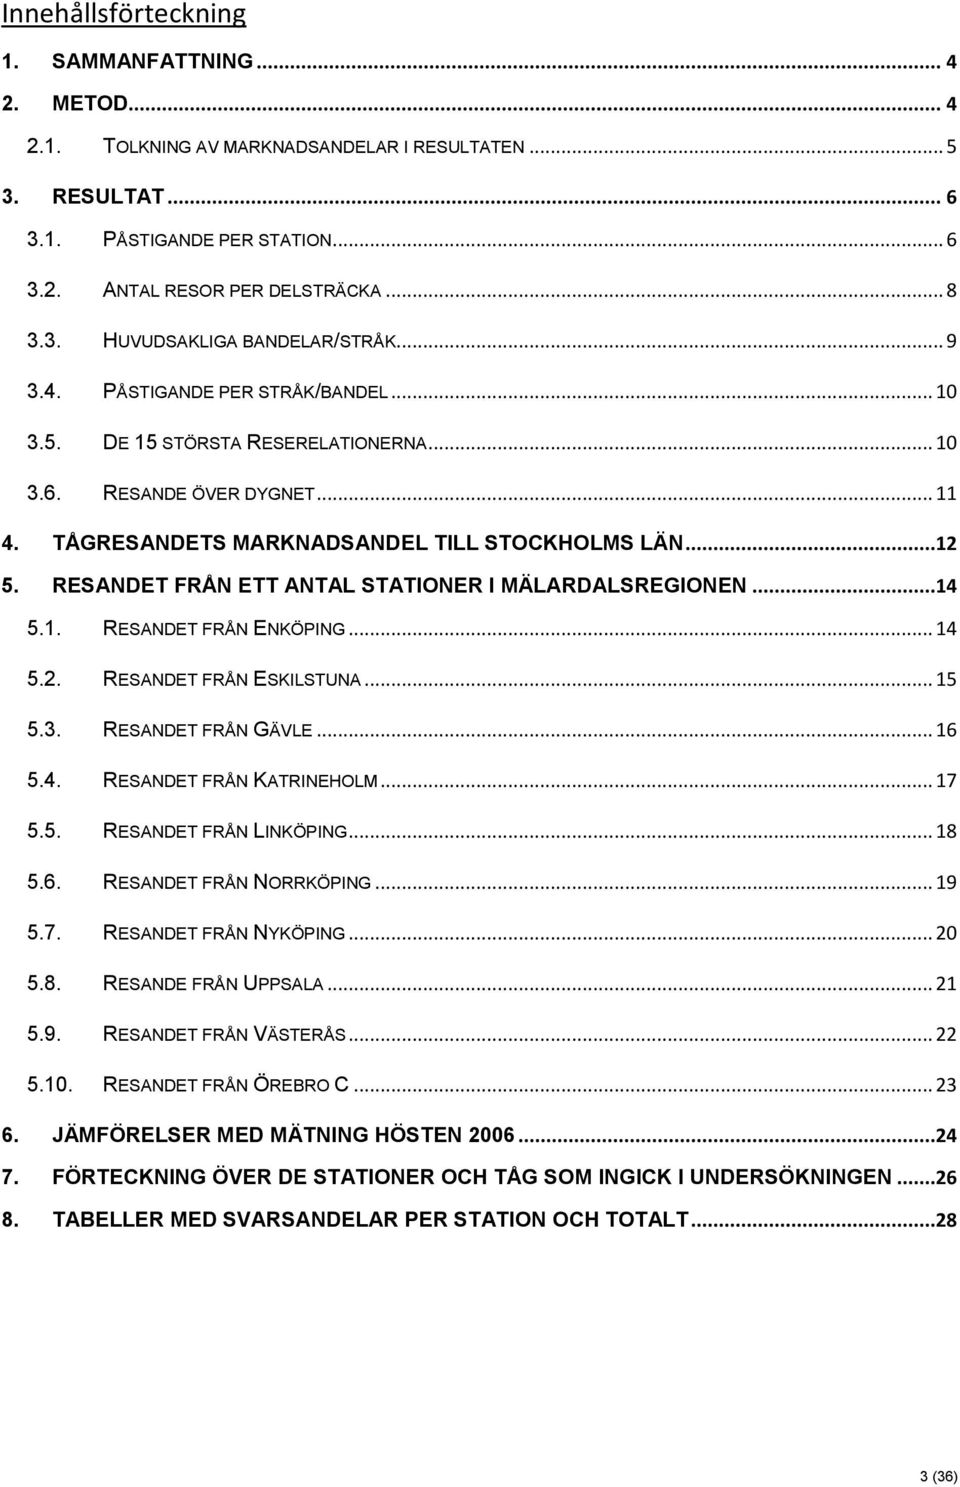 RESANDET FRÅN ETT ANTAL STATIONER I MÄLARDALSREGIONEN...14 5.1. RESANDET FRÅN ENKÖPING... 14 5.2. RESANDET FRÅN ESKILSTUNA... 15 5.3. RESANDET FRÅN GÄVLE... 16 5.4. RESANDET FRÅN KATRINEHOLM... 17 5.